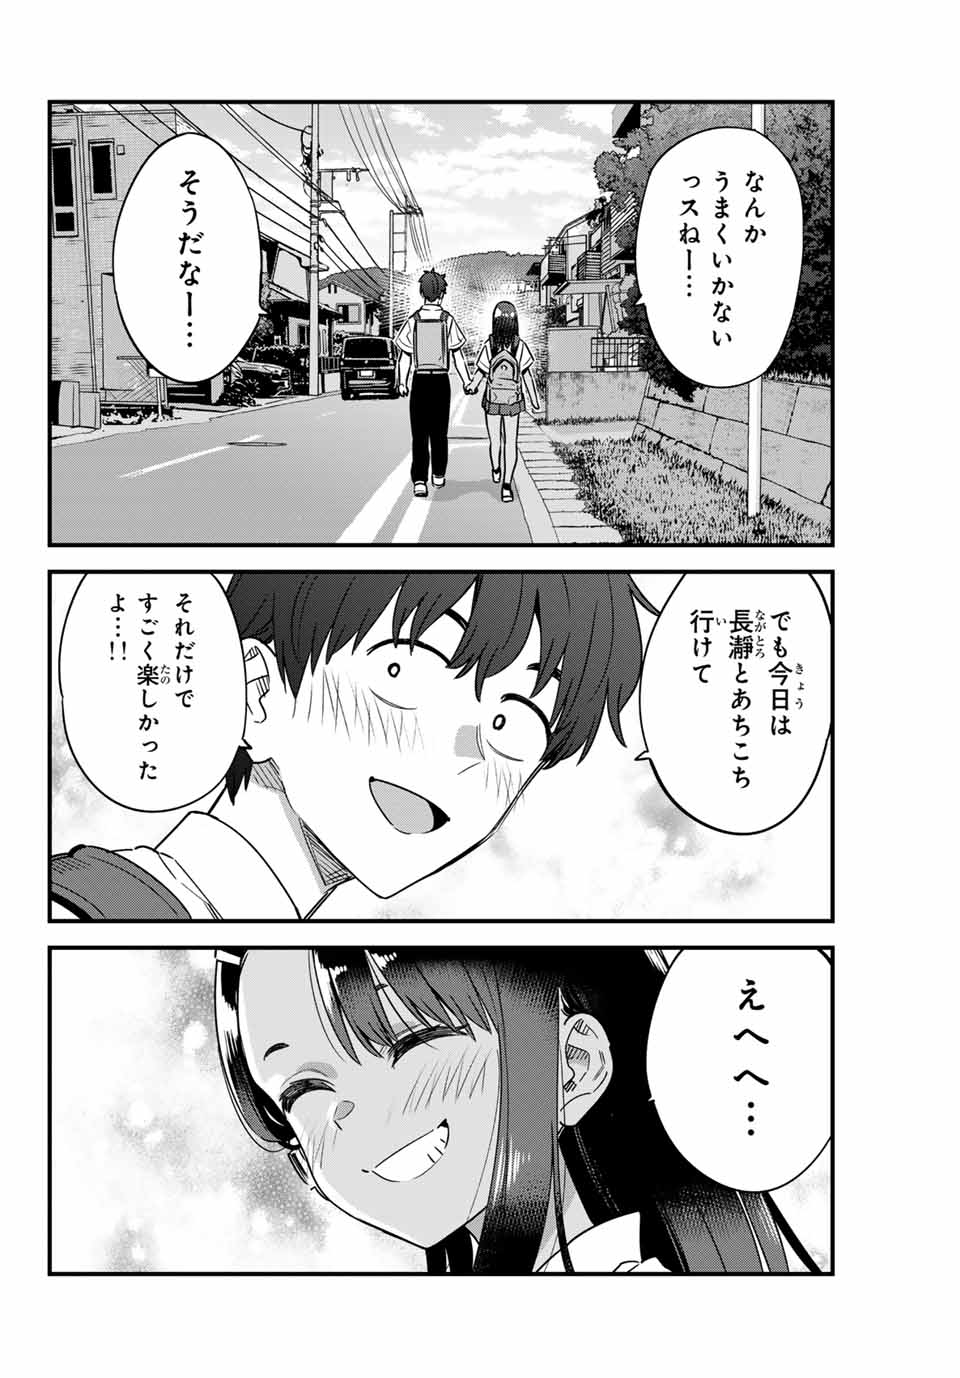 Ijiranaide, Nagatoro-san - Chapter 147 - Page 16